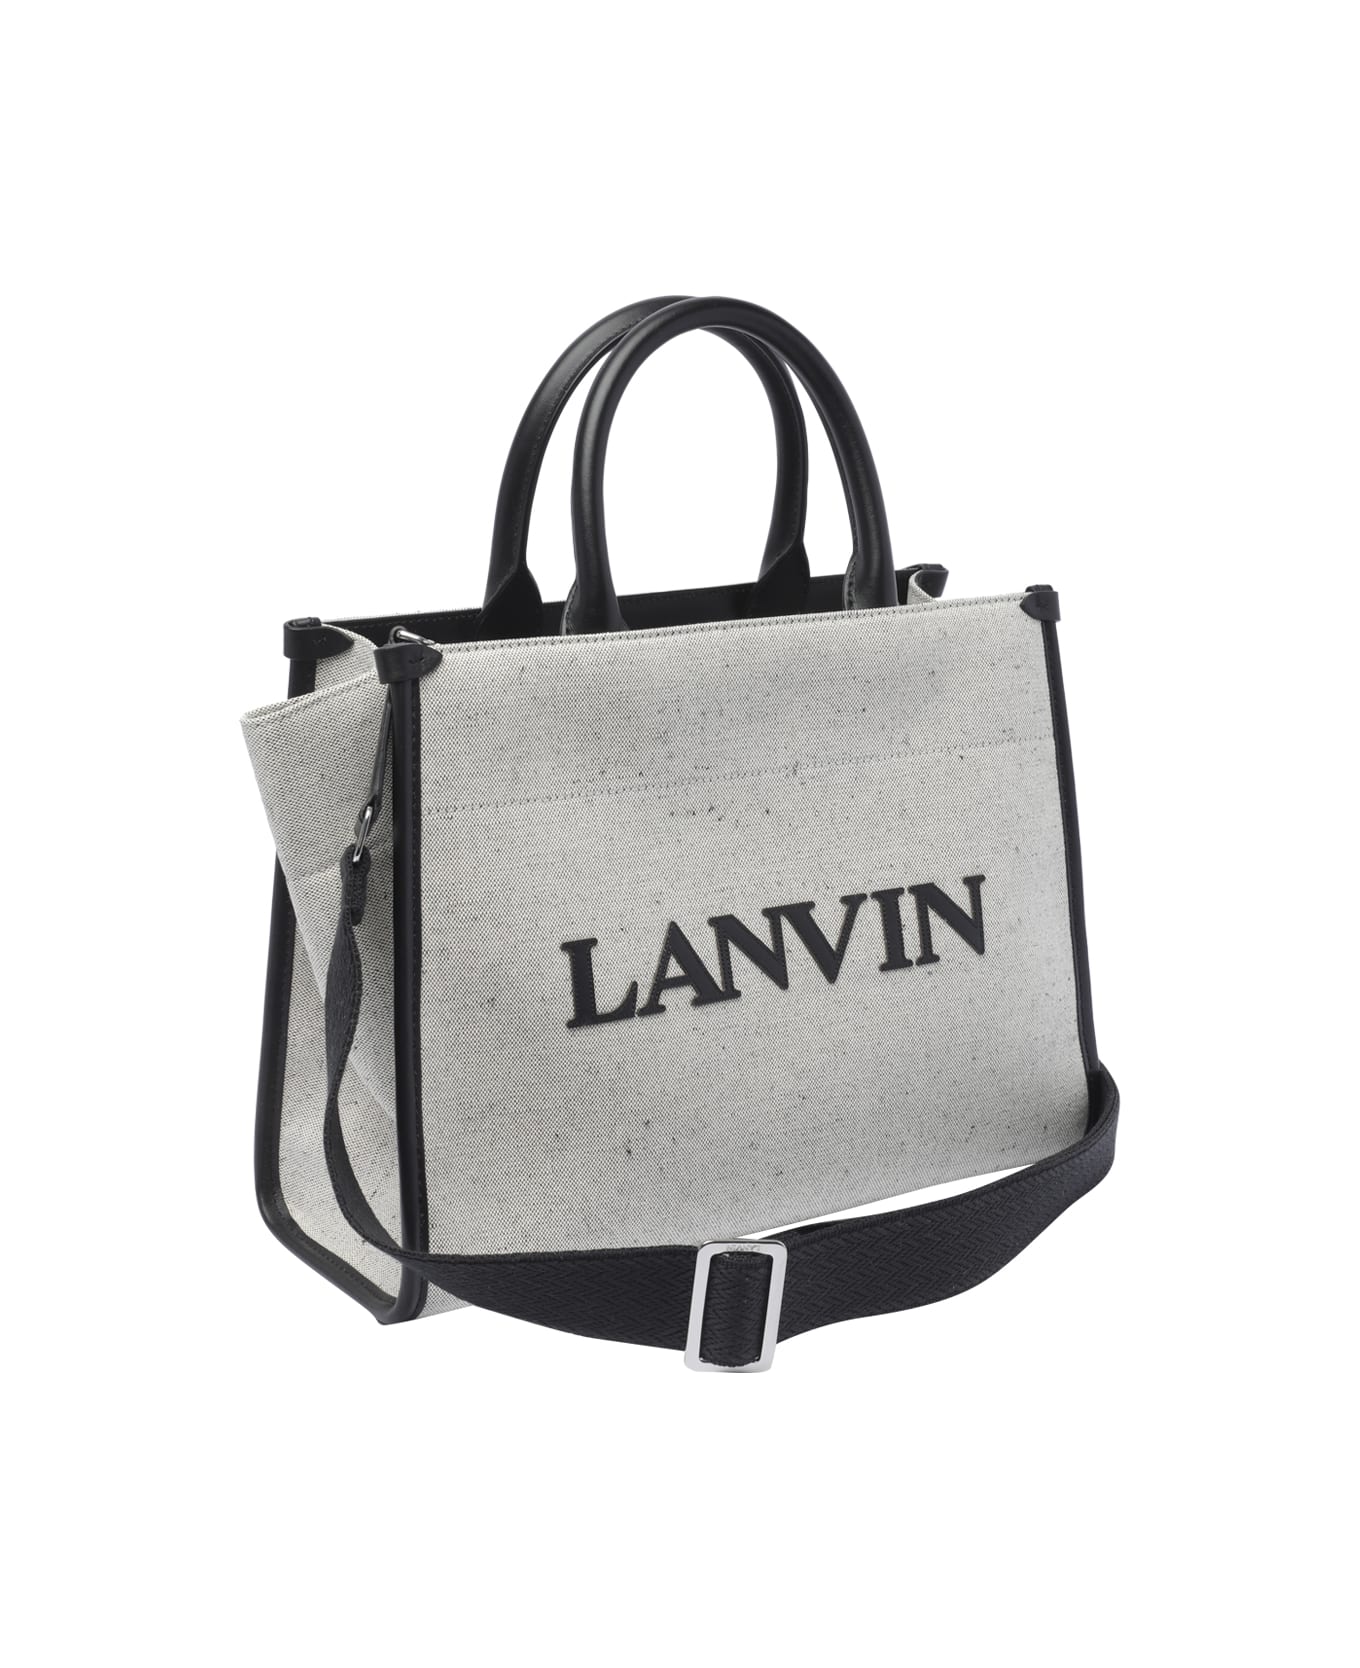 Lanvin Logo Handbag - Grey